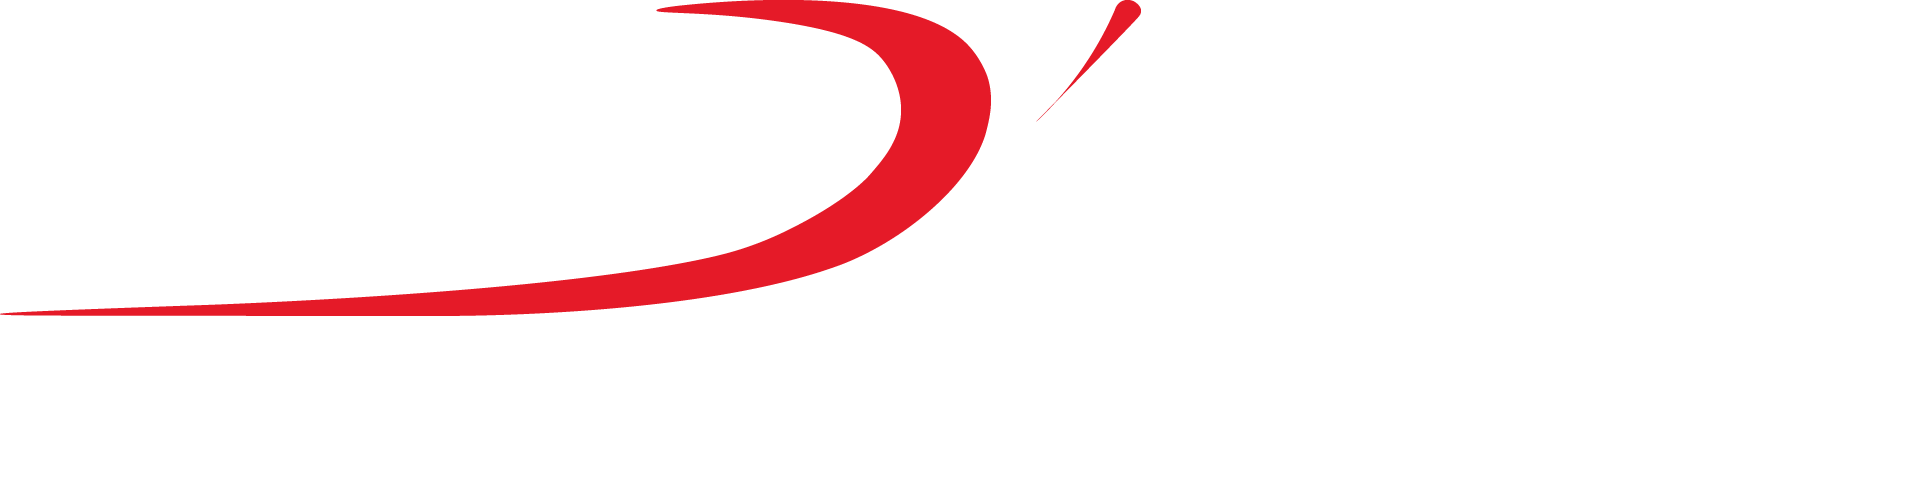 Pizzaria Dallagrana